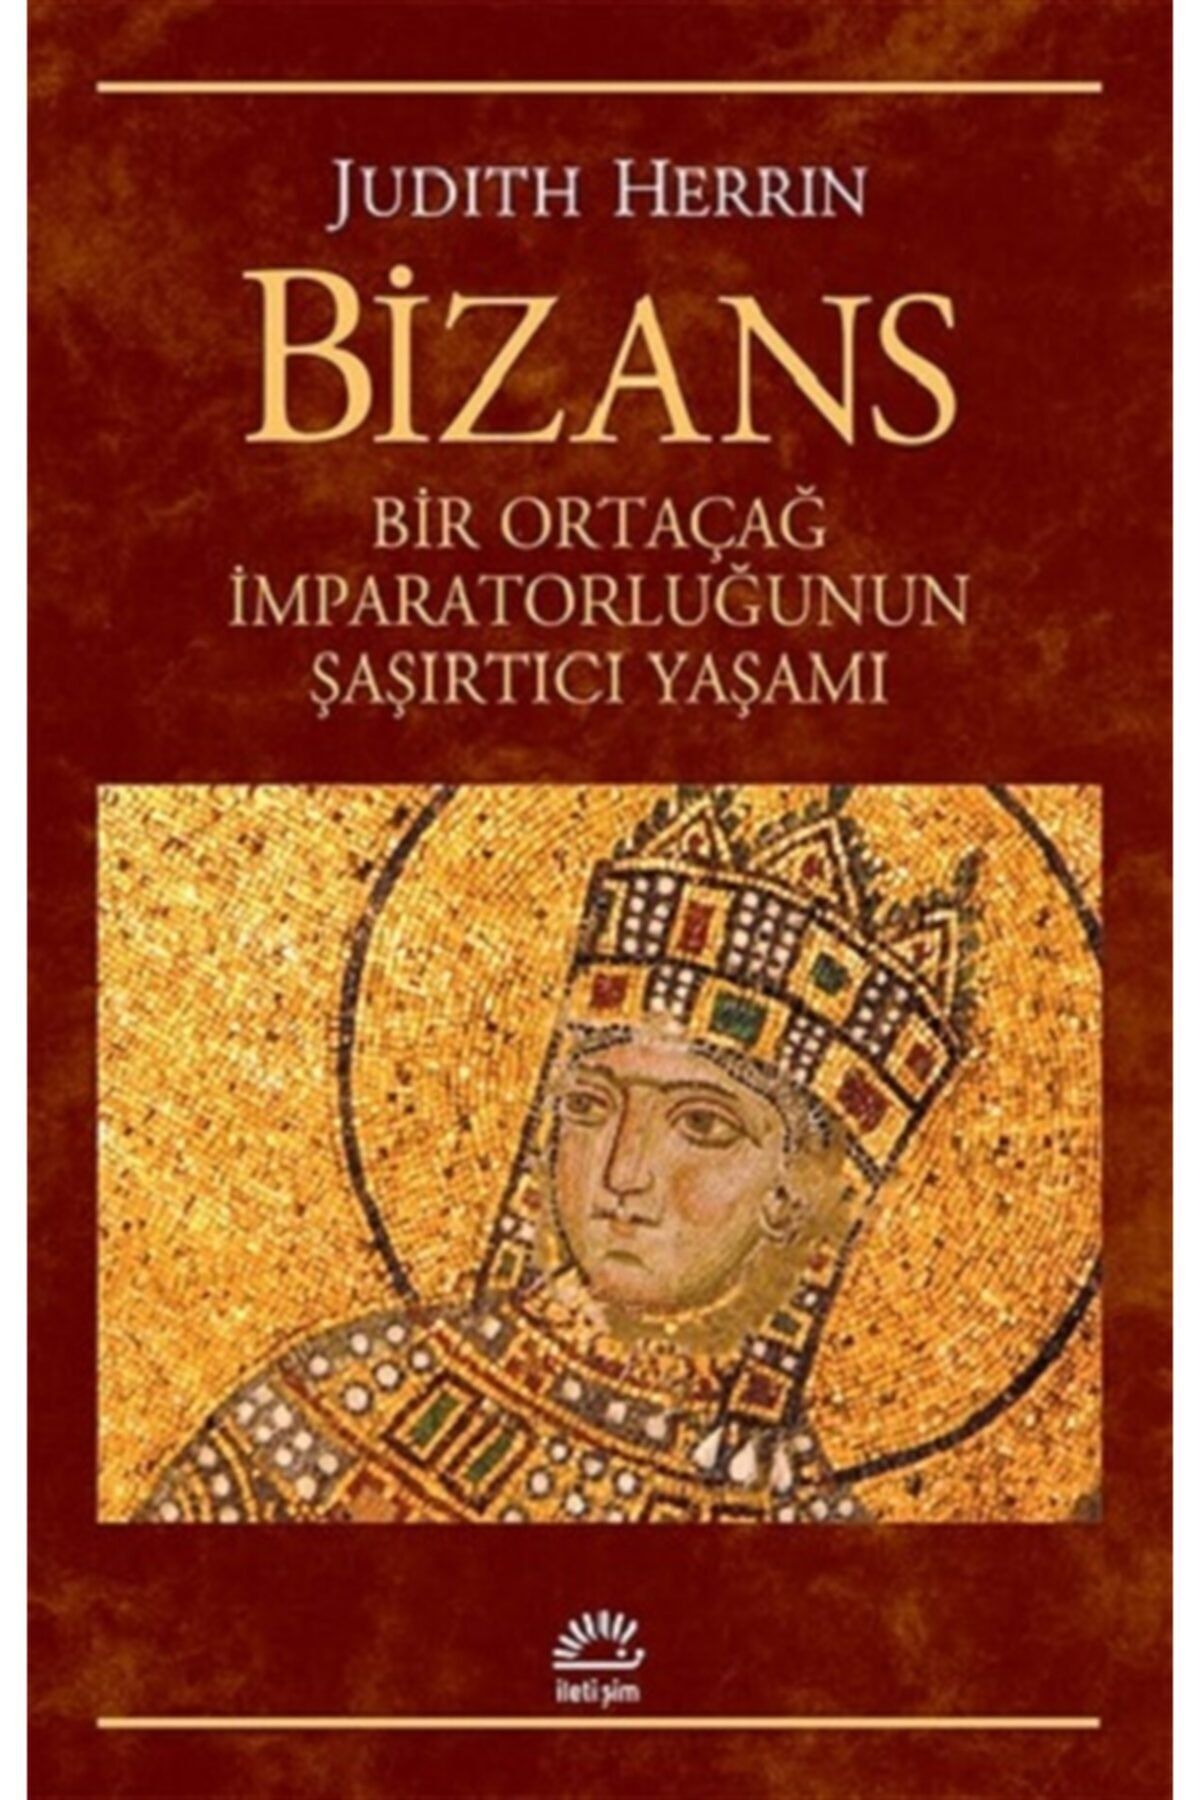 İletişim Yayınları Bizans: Bir Ortaçağ Imparatorluğunun Şaşırtıcı Yaşamı - - Judith Herrin Kitabı